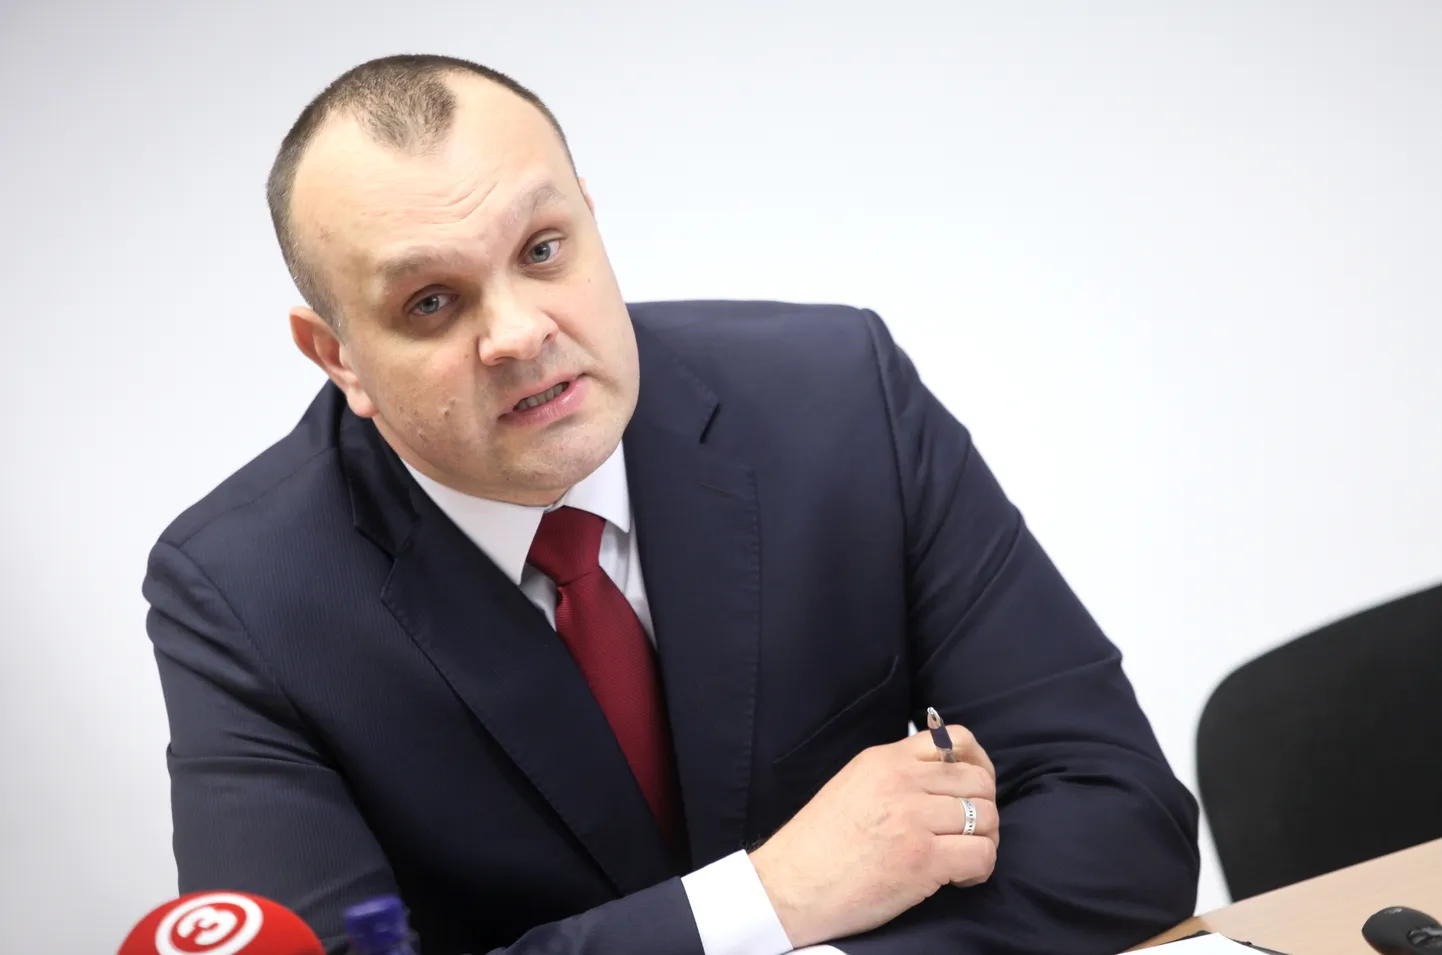 Valsts policijas Ekonomisko noziegumu apkarošanas pārvaldes priekšnieks Pēteris Bauska 